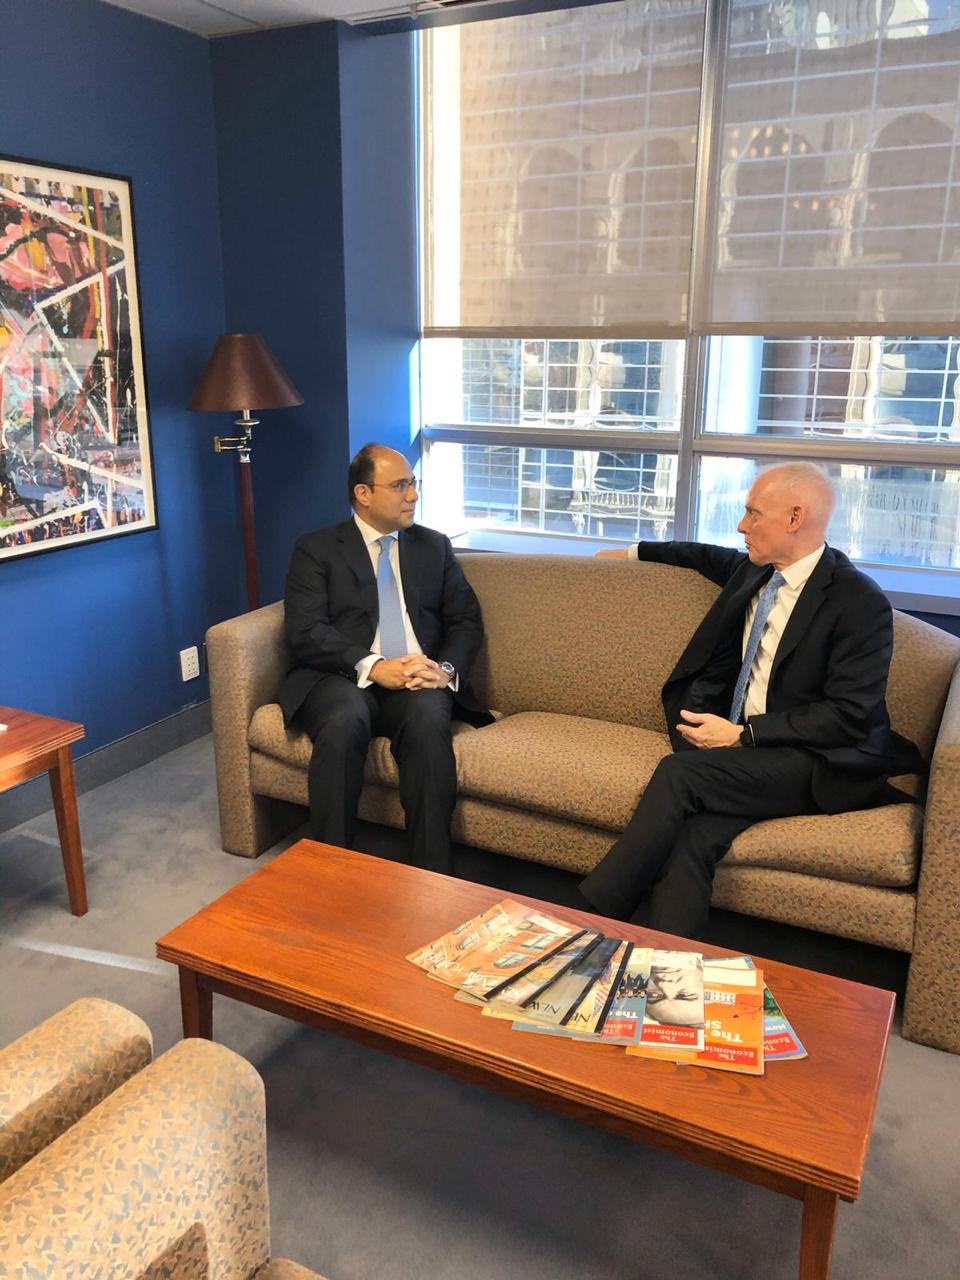   سفير مصر في كندا يلتقى مستشار الأمن القومي الكندي للتباحث حول التطورات في الشرق الأوسط